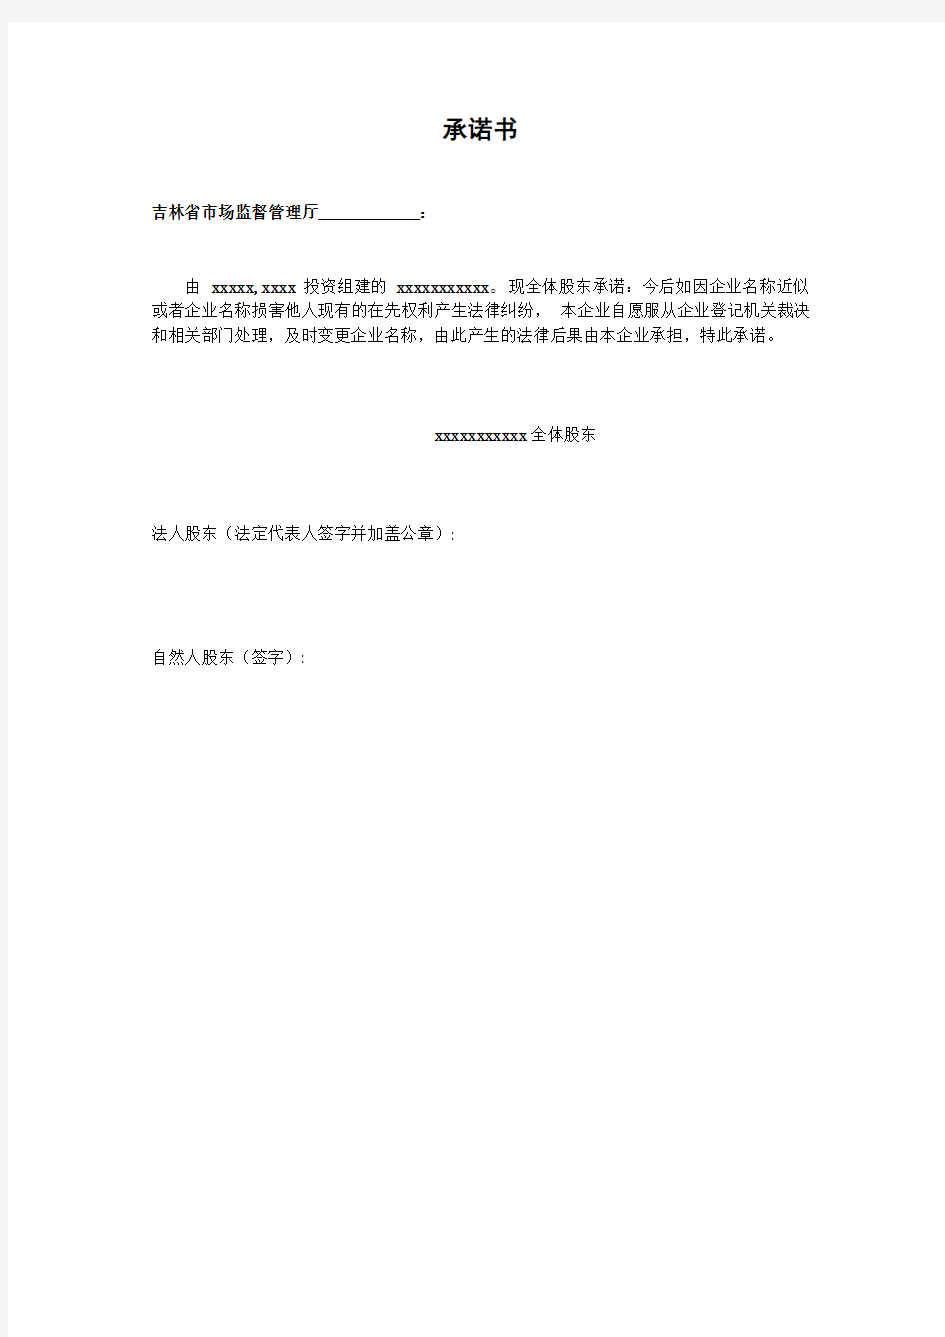 吉林省市场监督管理厅承诺书工商办证承诺书